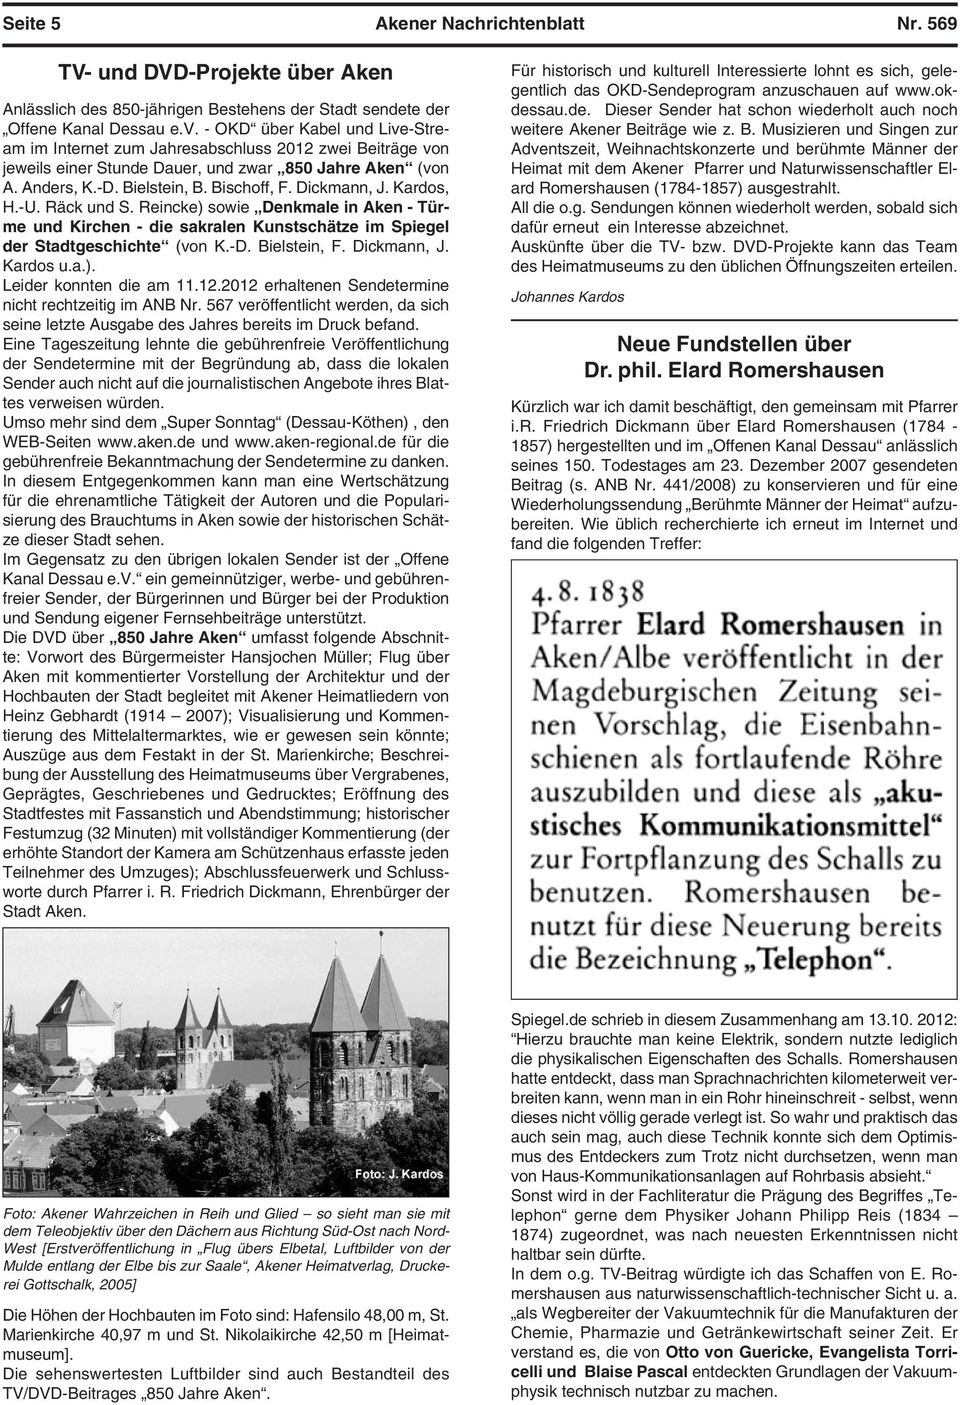 Dickmann, J. Kardos, H.-U. Räck und S. Reincke) sowie Denkmale in Aken - Türme und Kirchen - die sakralen Kunstschätze im Spiegel der Stadtgeschichte (von K.-D. Bielstein, F. Dickmann, J. Kardos u.a.). Leider konnten die am 11.